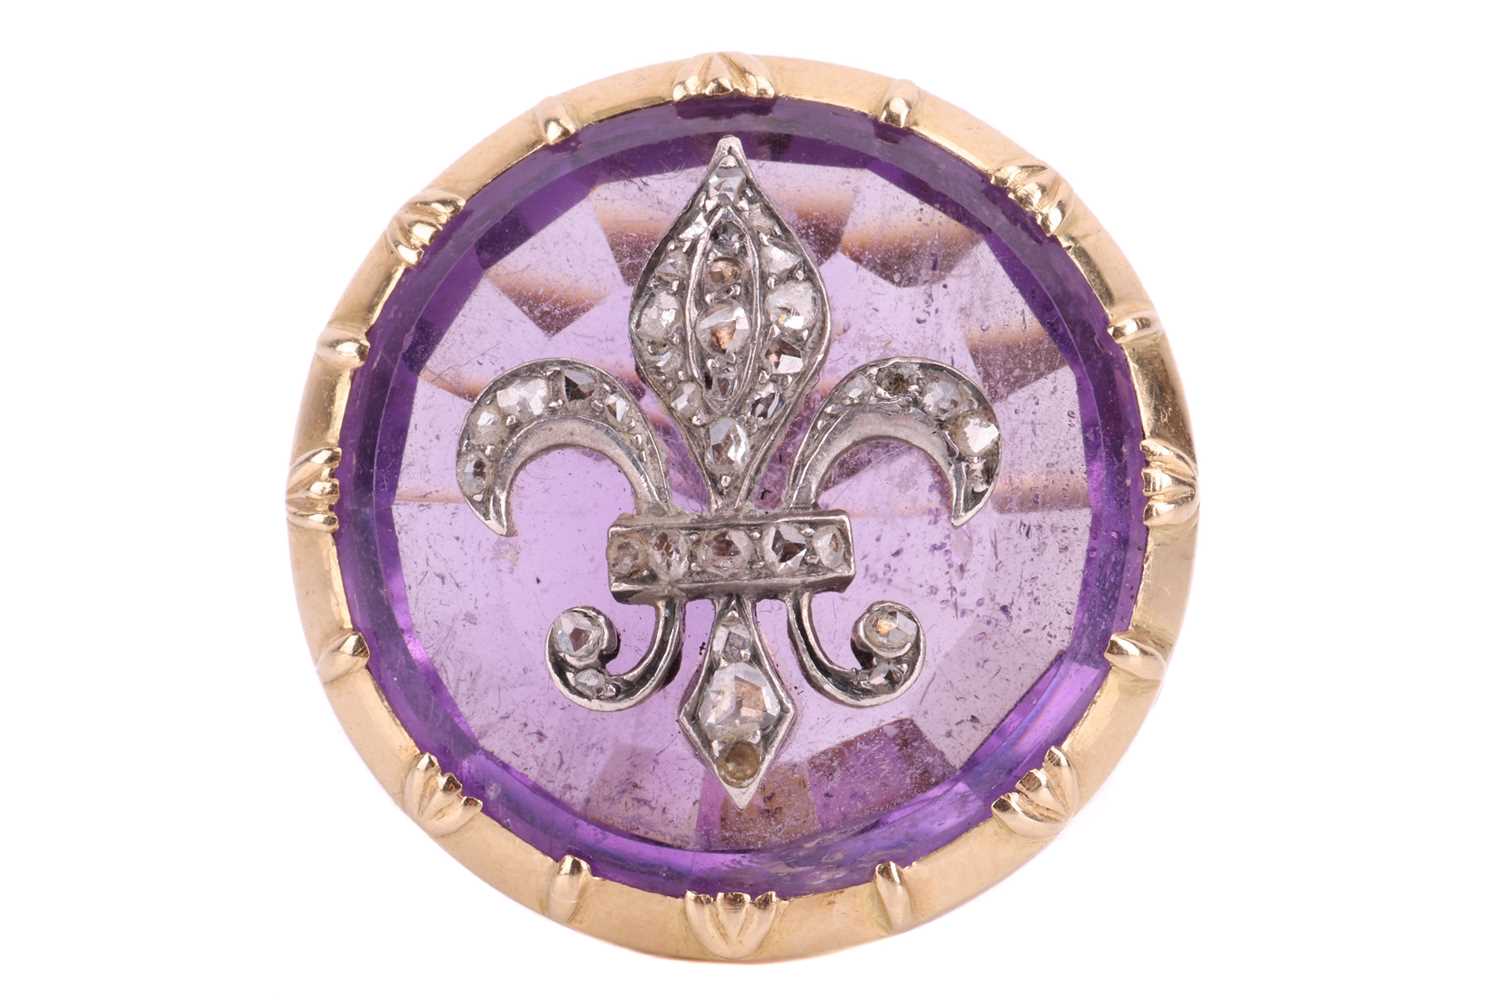 An amethyst fleur-de-lis cocktail ring, the fleur-de-lis emblem set with rose cut diamonds and mount